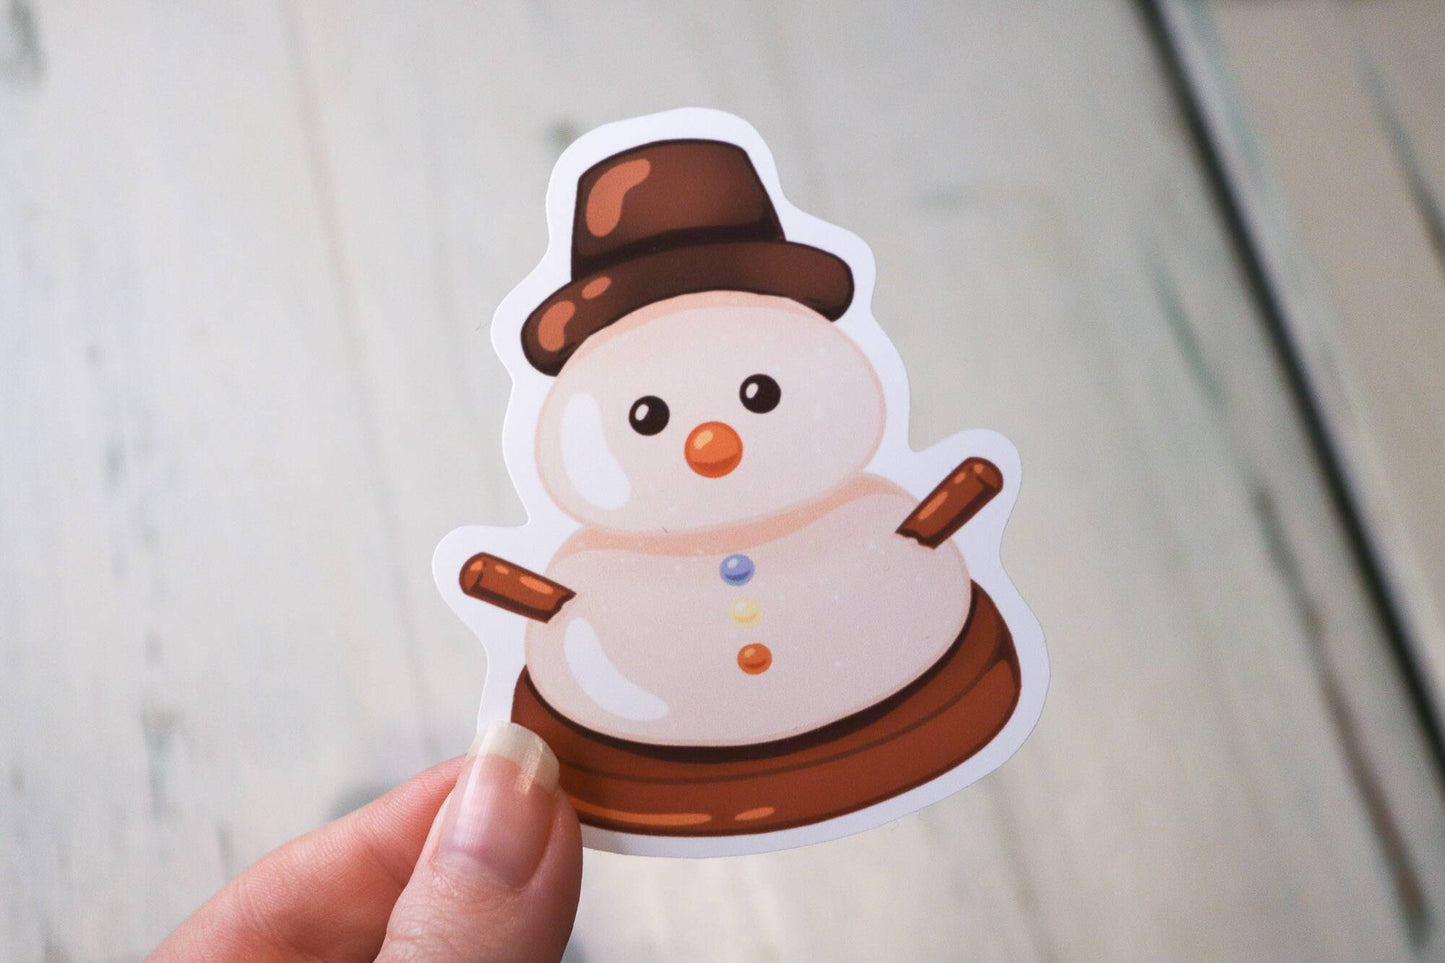 Sticker - Snowman Cookie